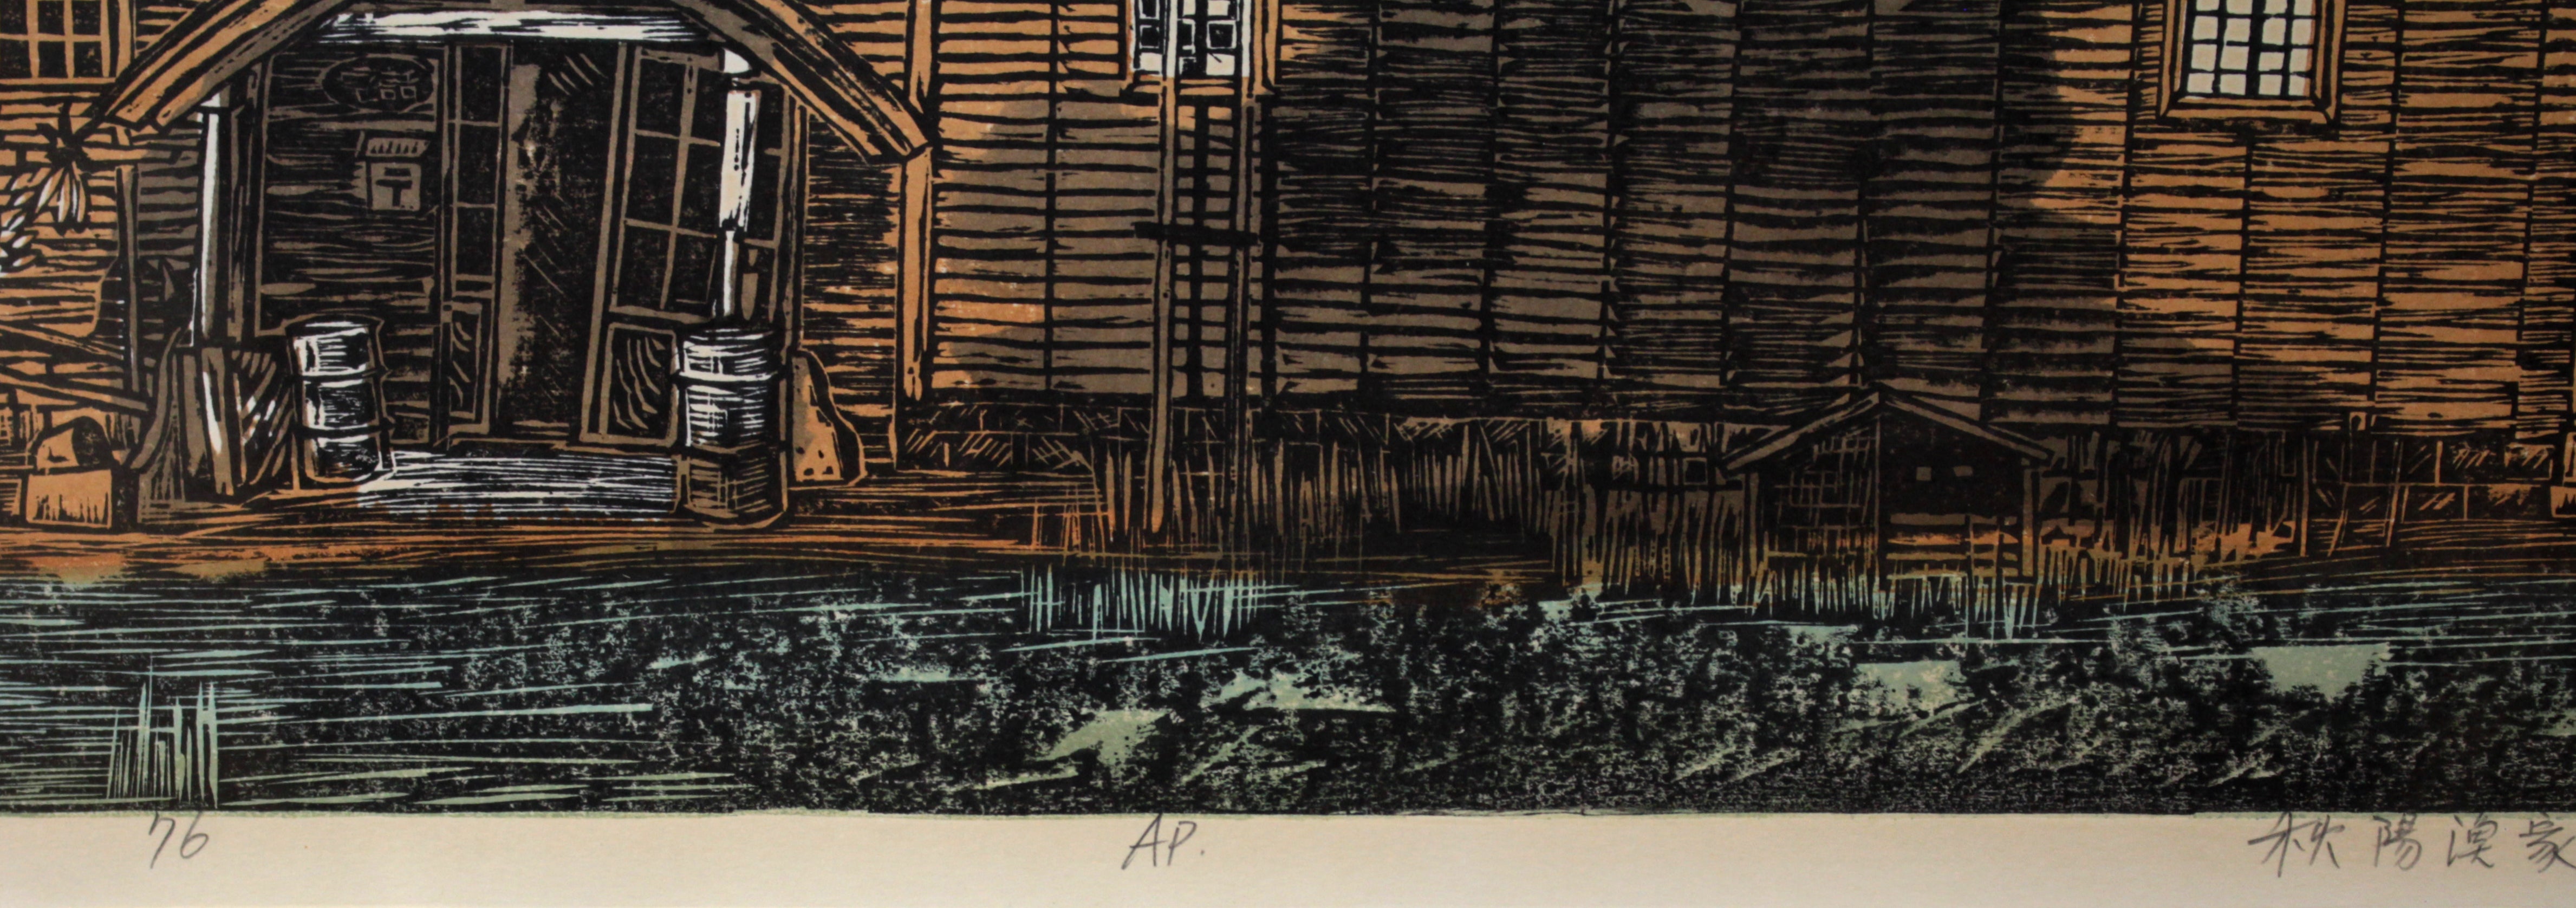 尾崎志郎 『秋陽漁家』 木版画 - 北海道画廊